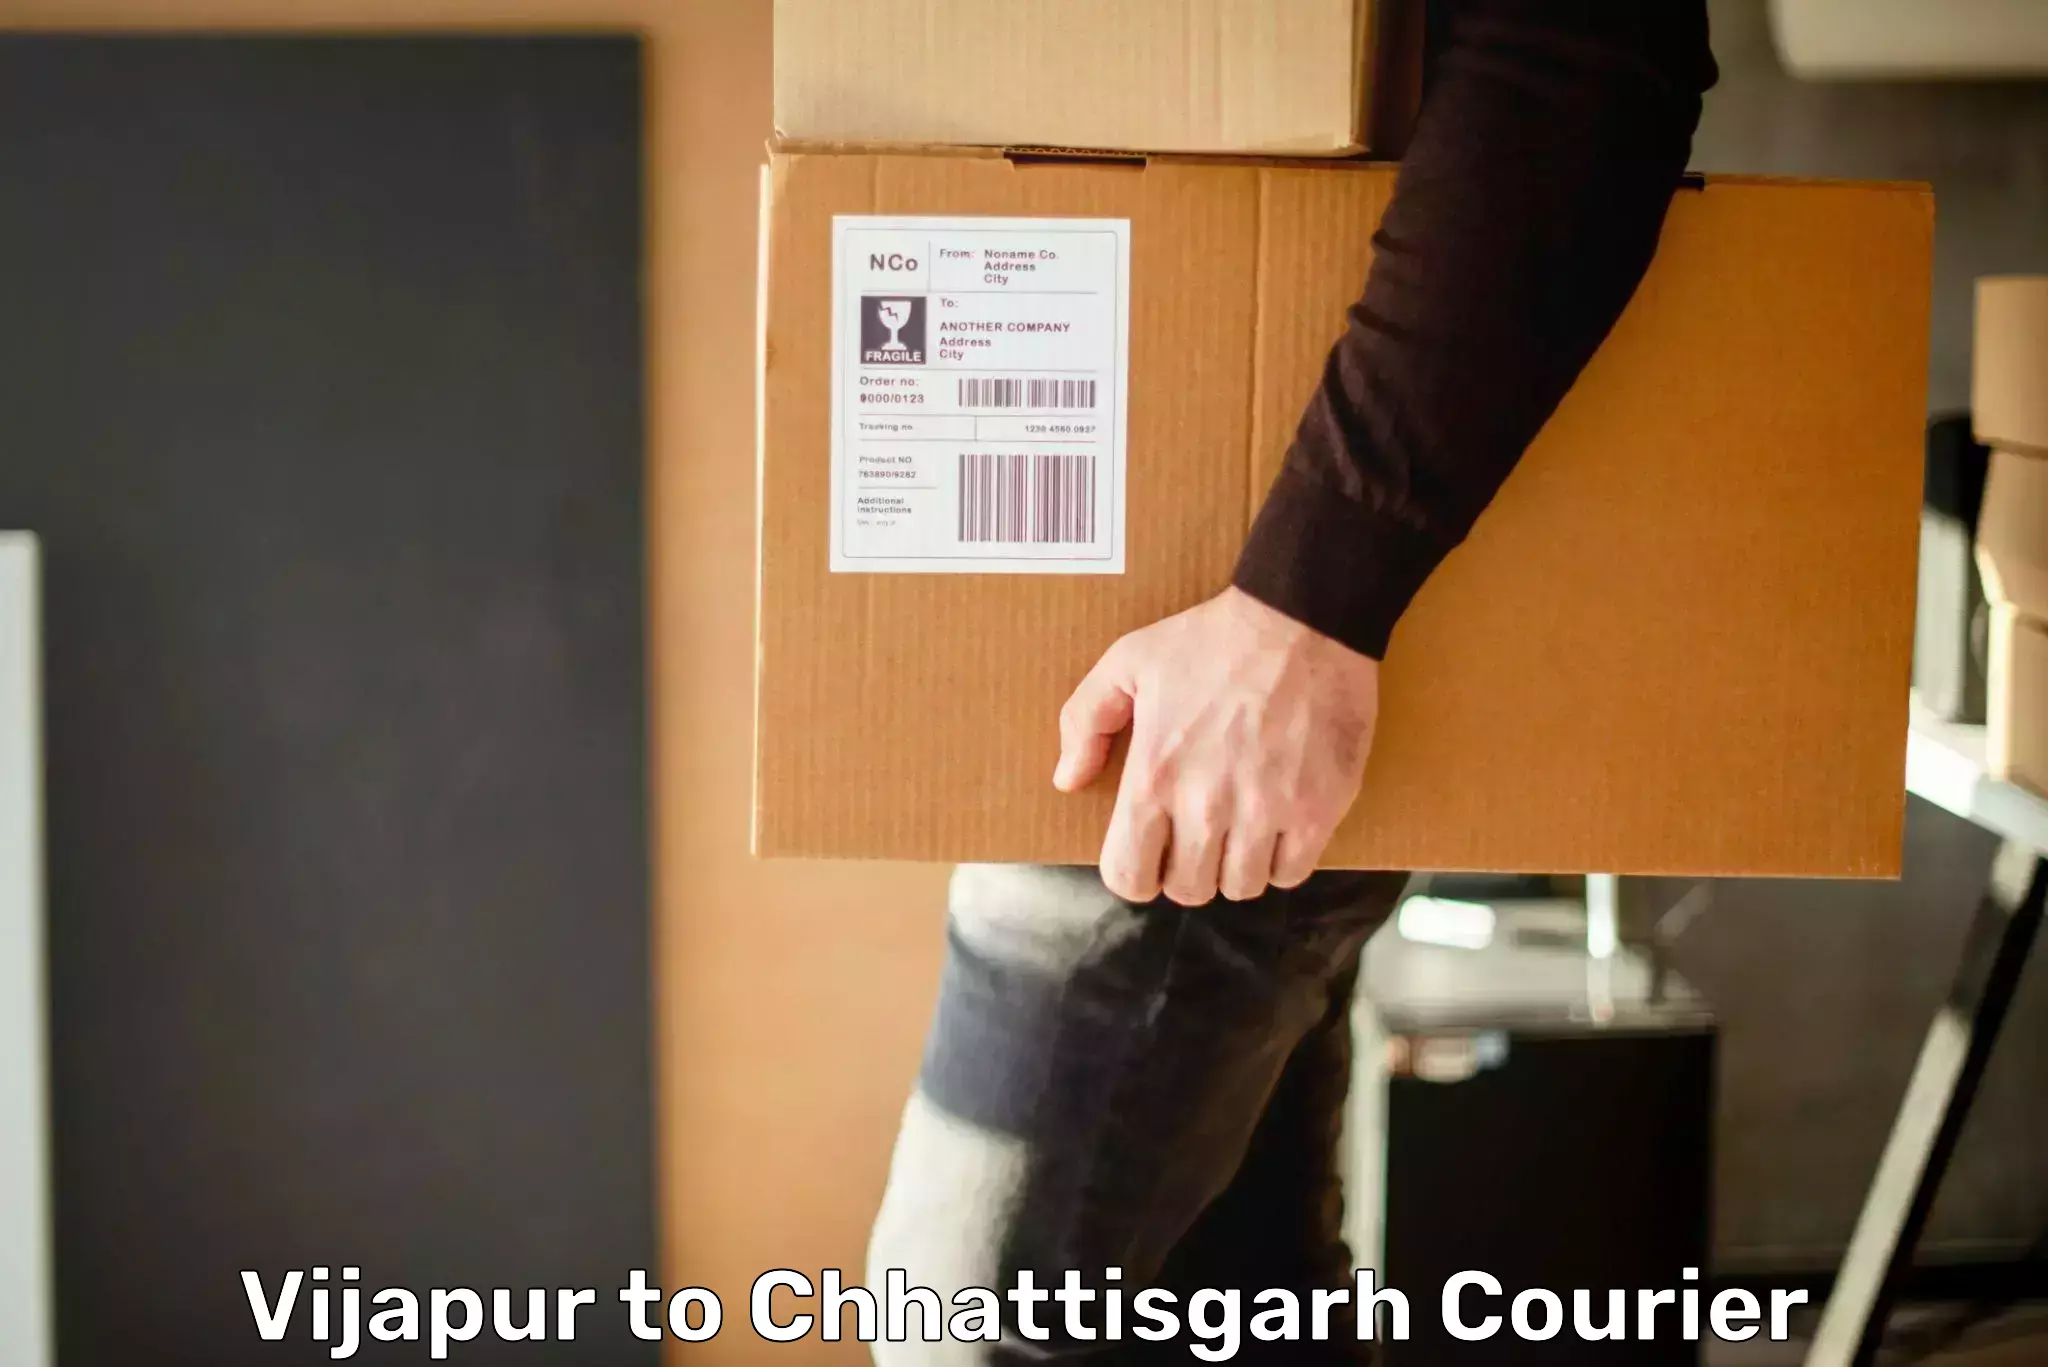 Premium delivery services Vijapur to Chhattisgarh